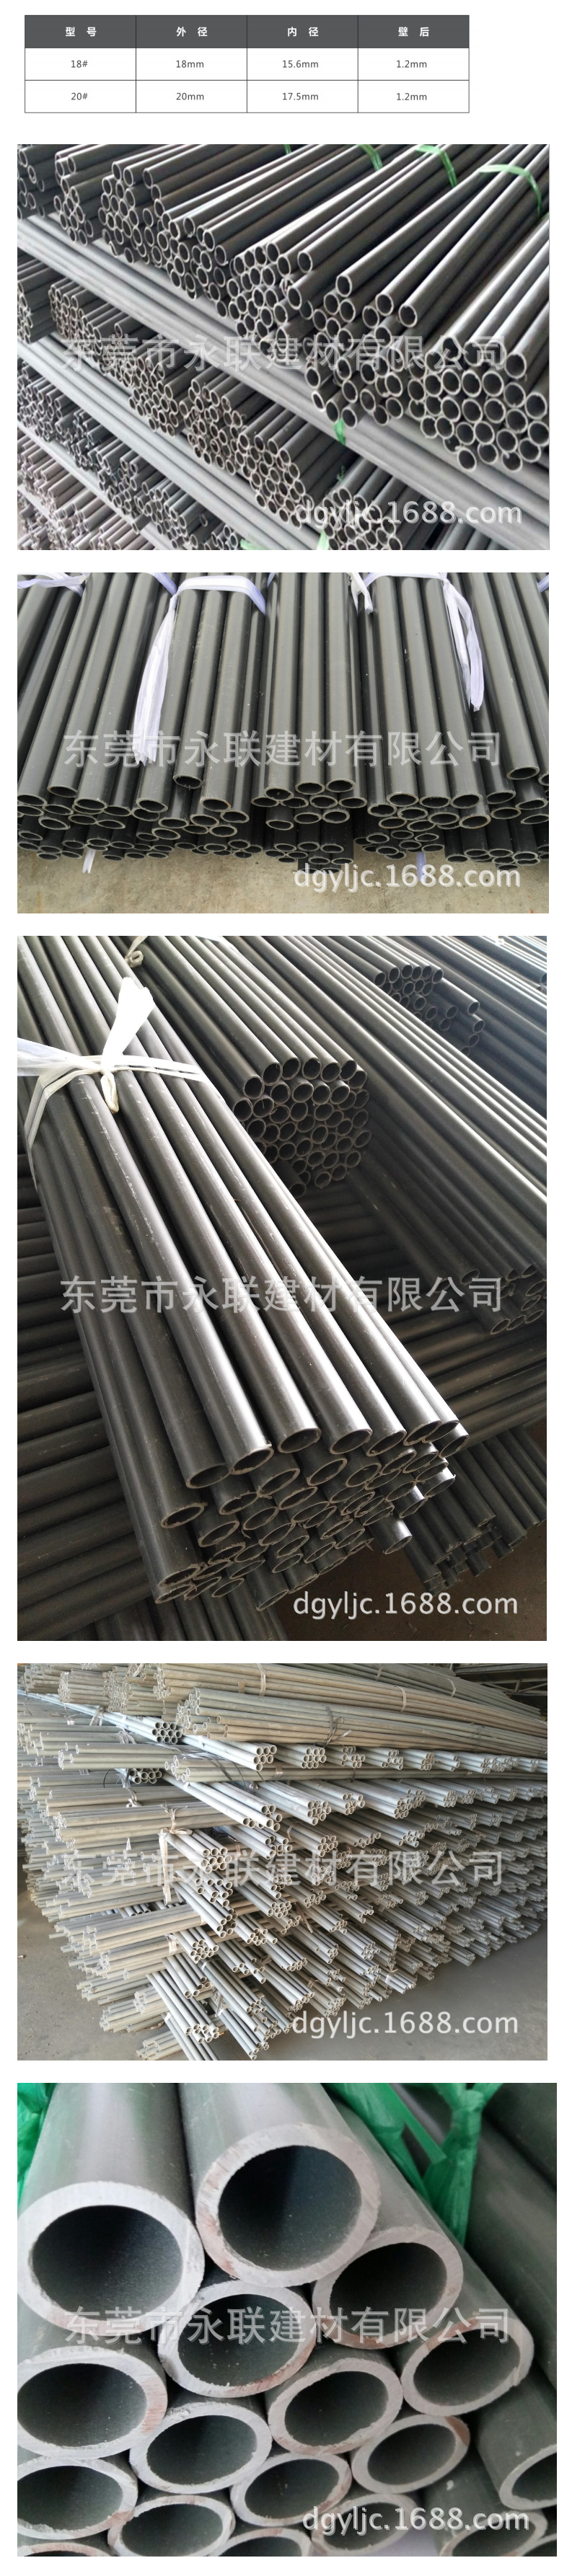 厂家直销18#高强螺杆套管 PVC 套管 高强螺杆保护管 铝模套管-阿里巴巴.png